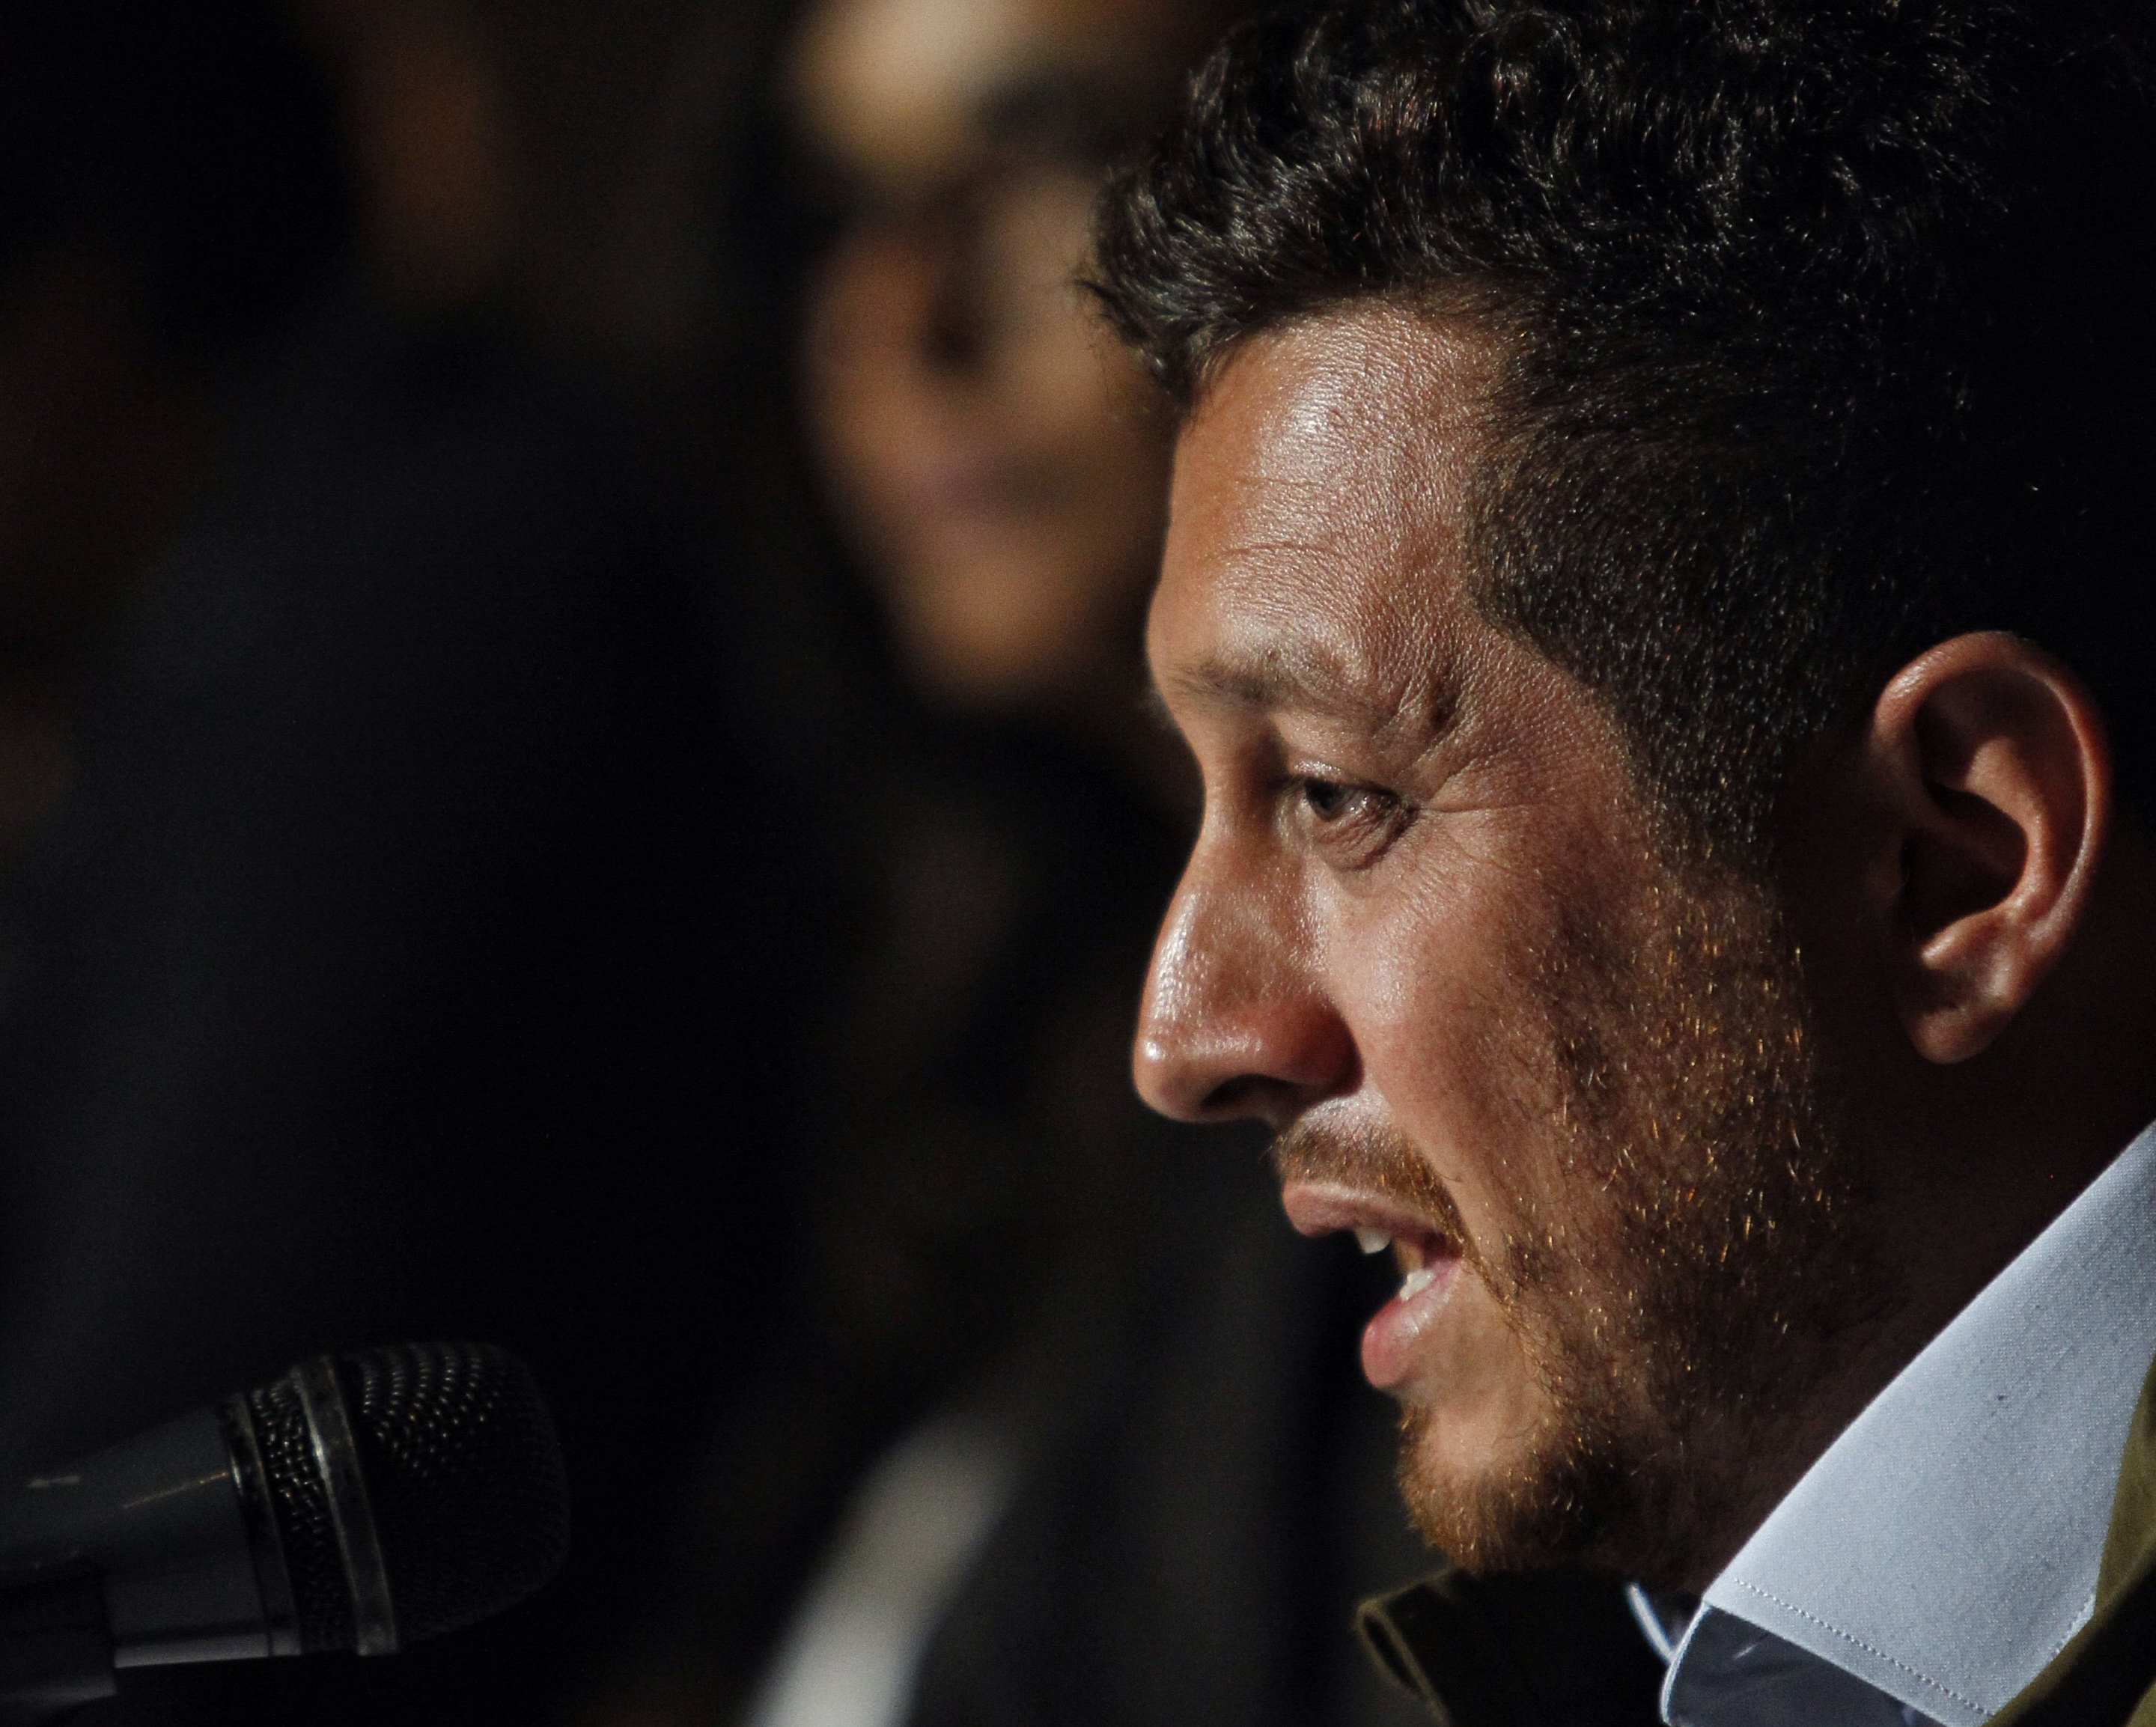  Director mexicano aplaudido en Cannes por pronunciarse a favor de legalizar la droga